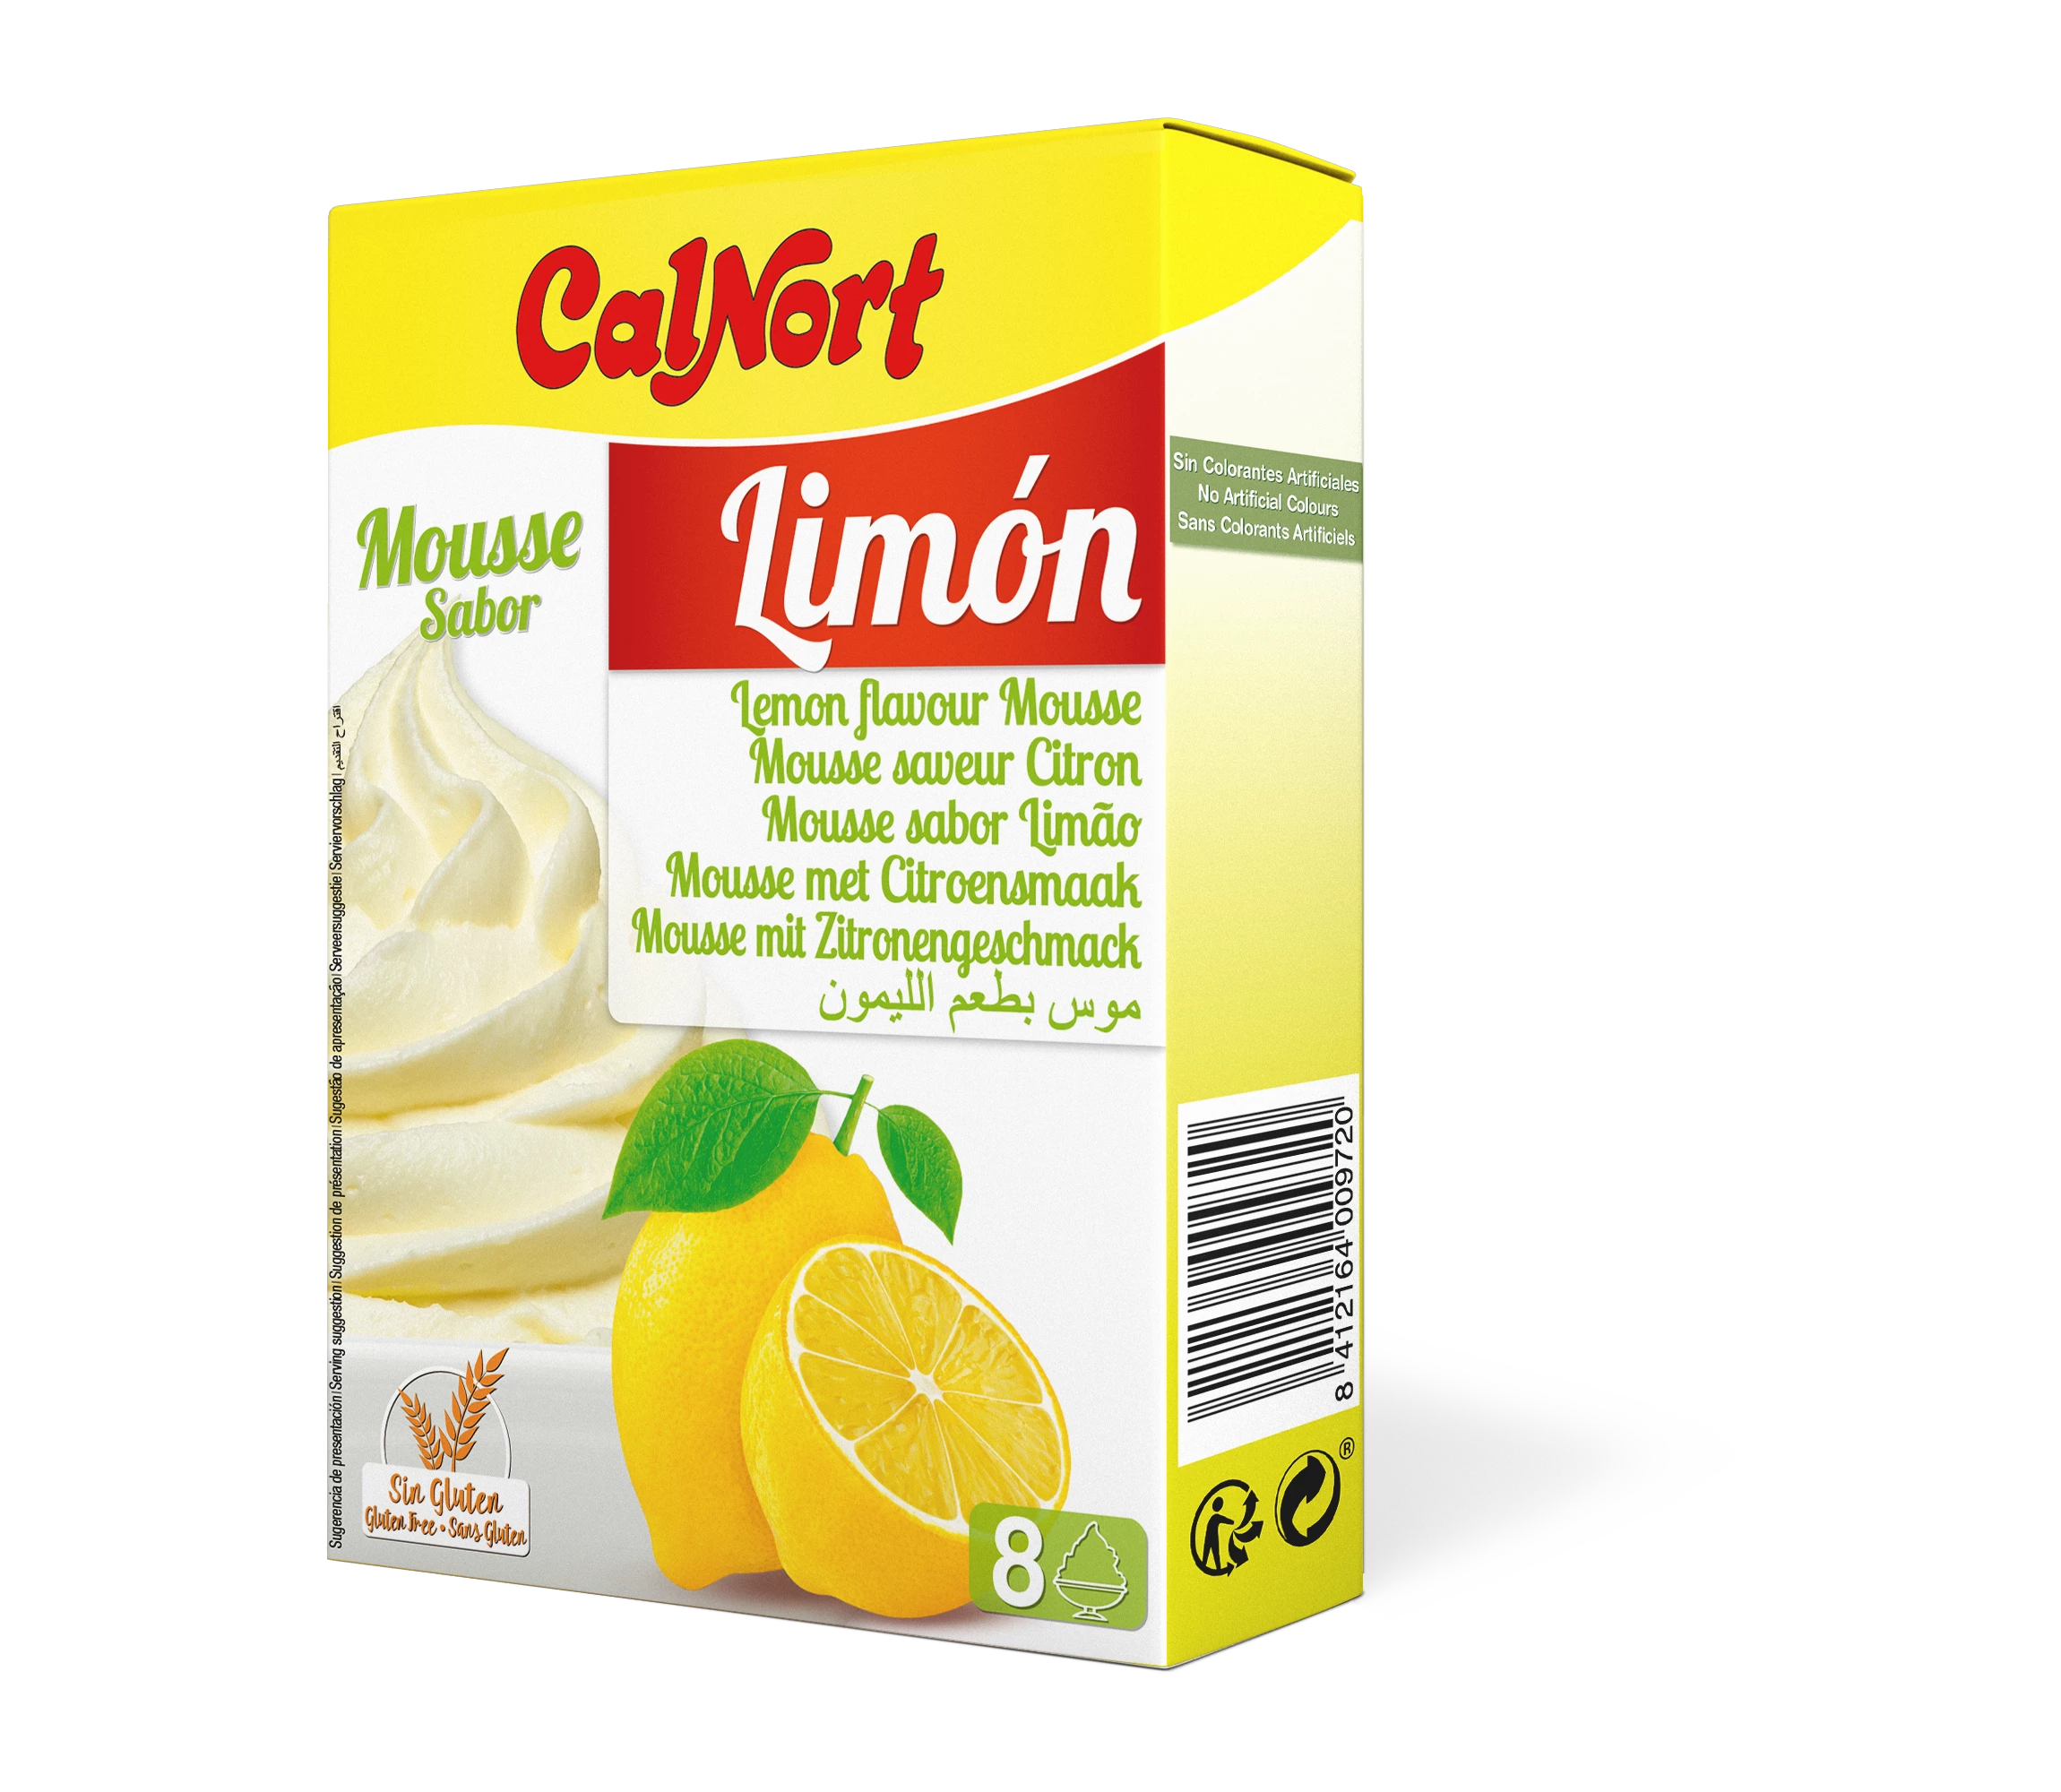 Приготовление лимонного мусса 2 х 65 г - CALNORT